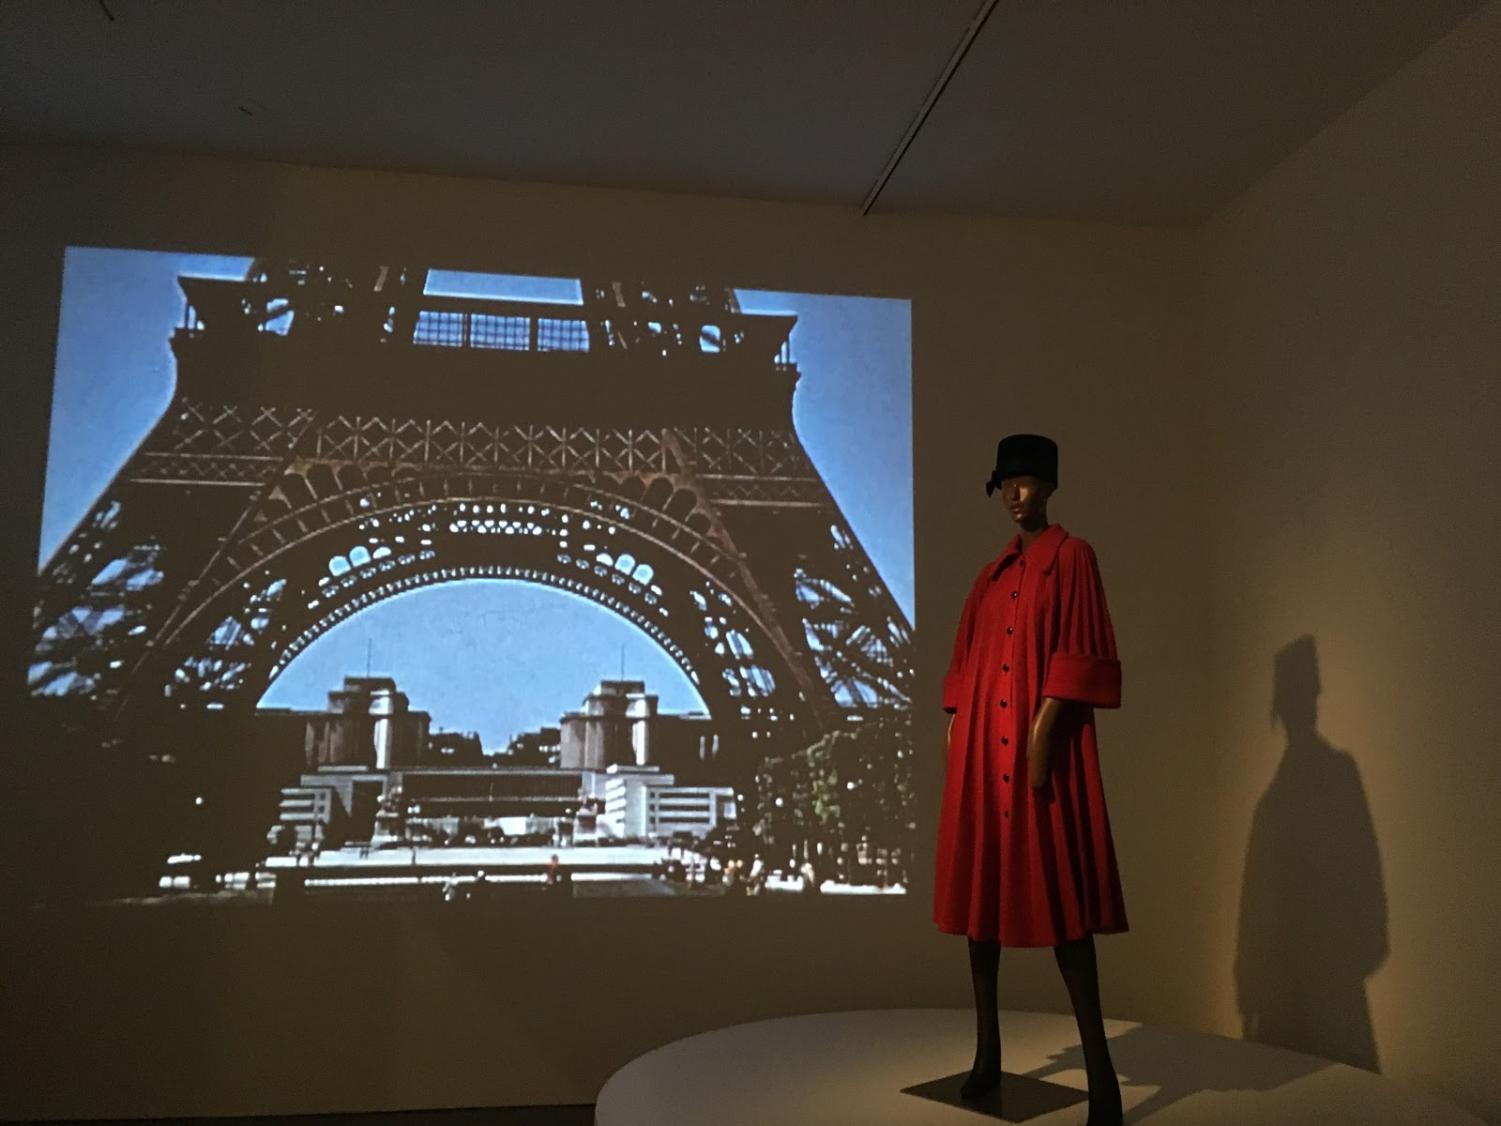 Pierre Cardin: Future Fashion - Exhibitions - The Design Edit